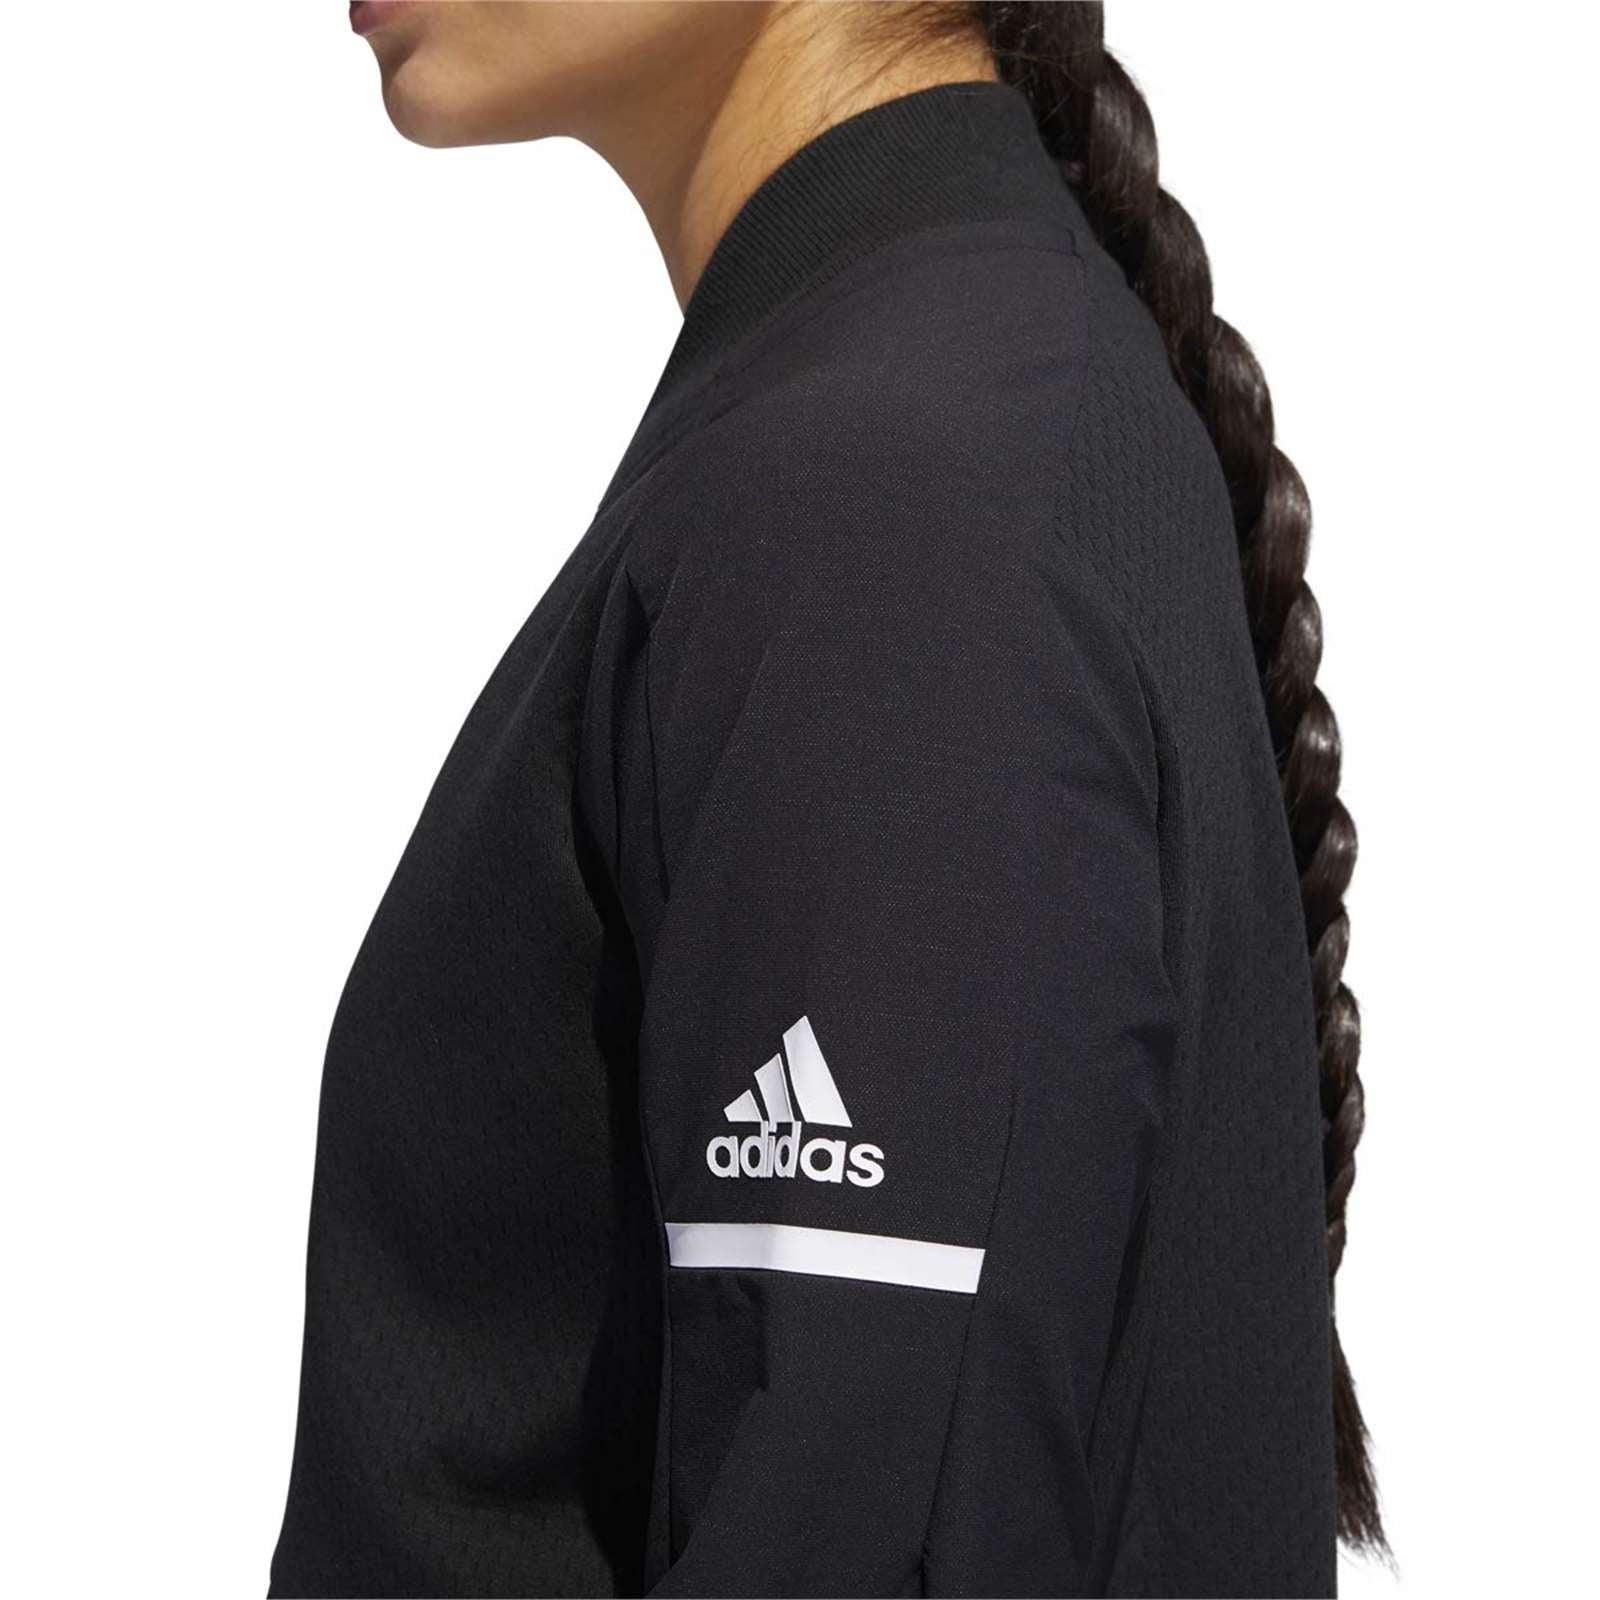 Adidas Women Squad Bomber Jacket